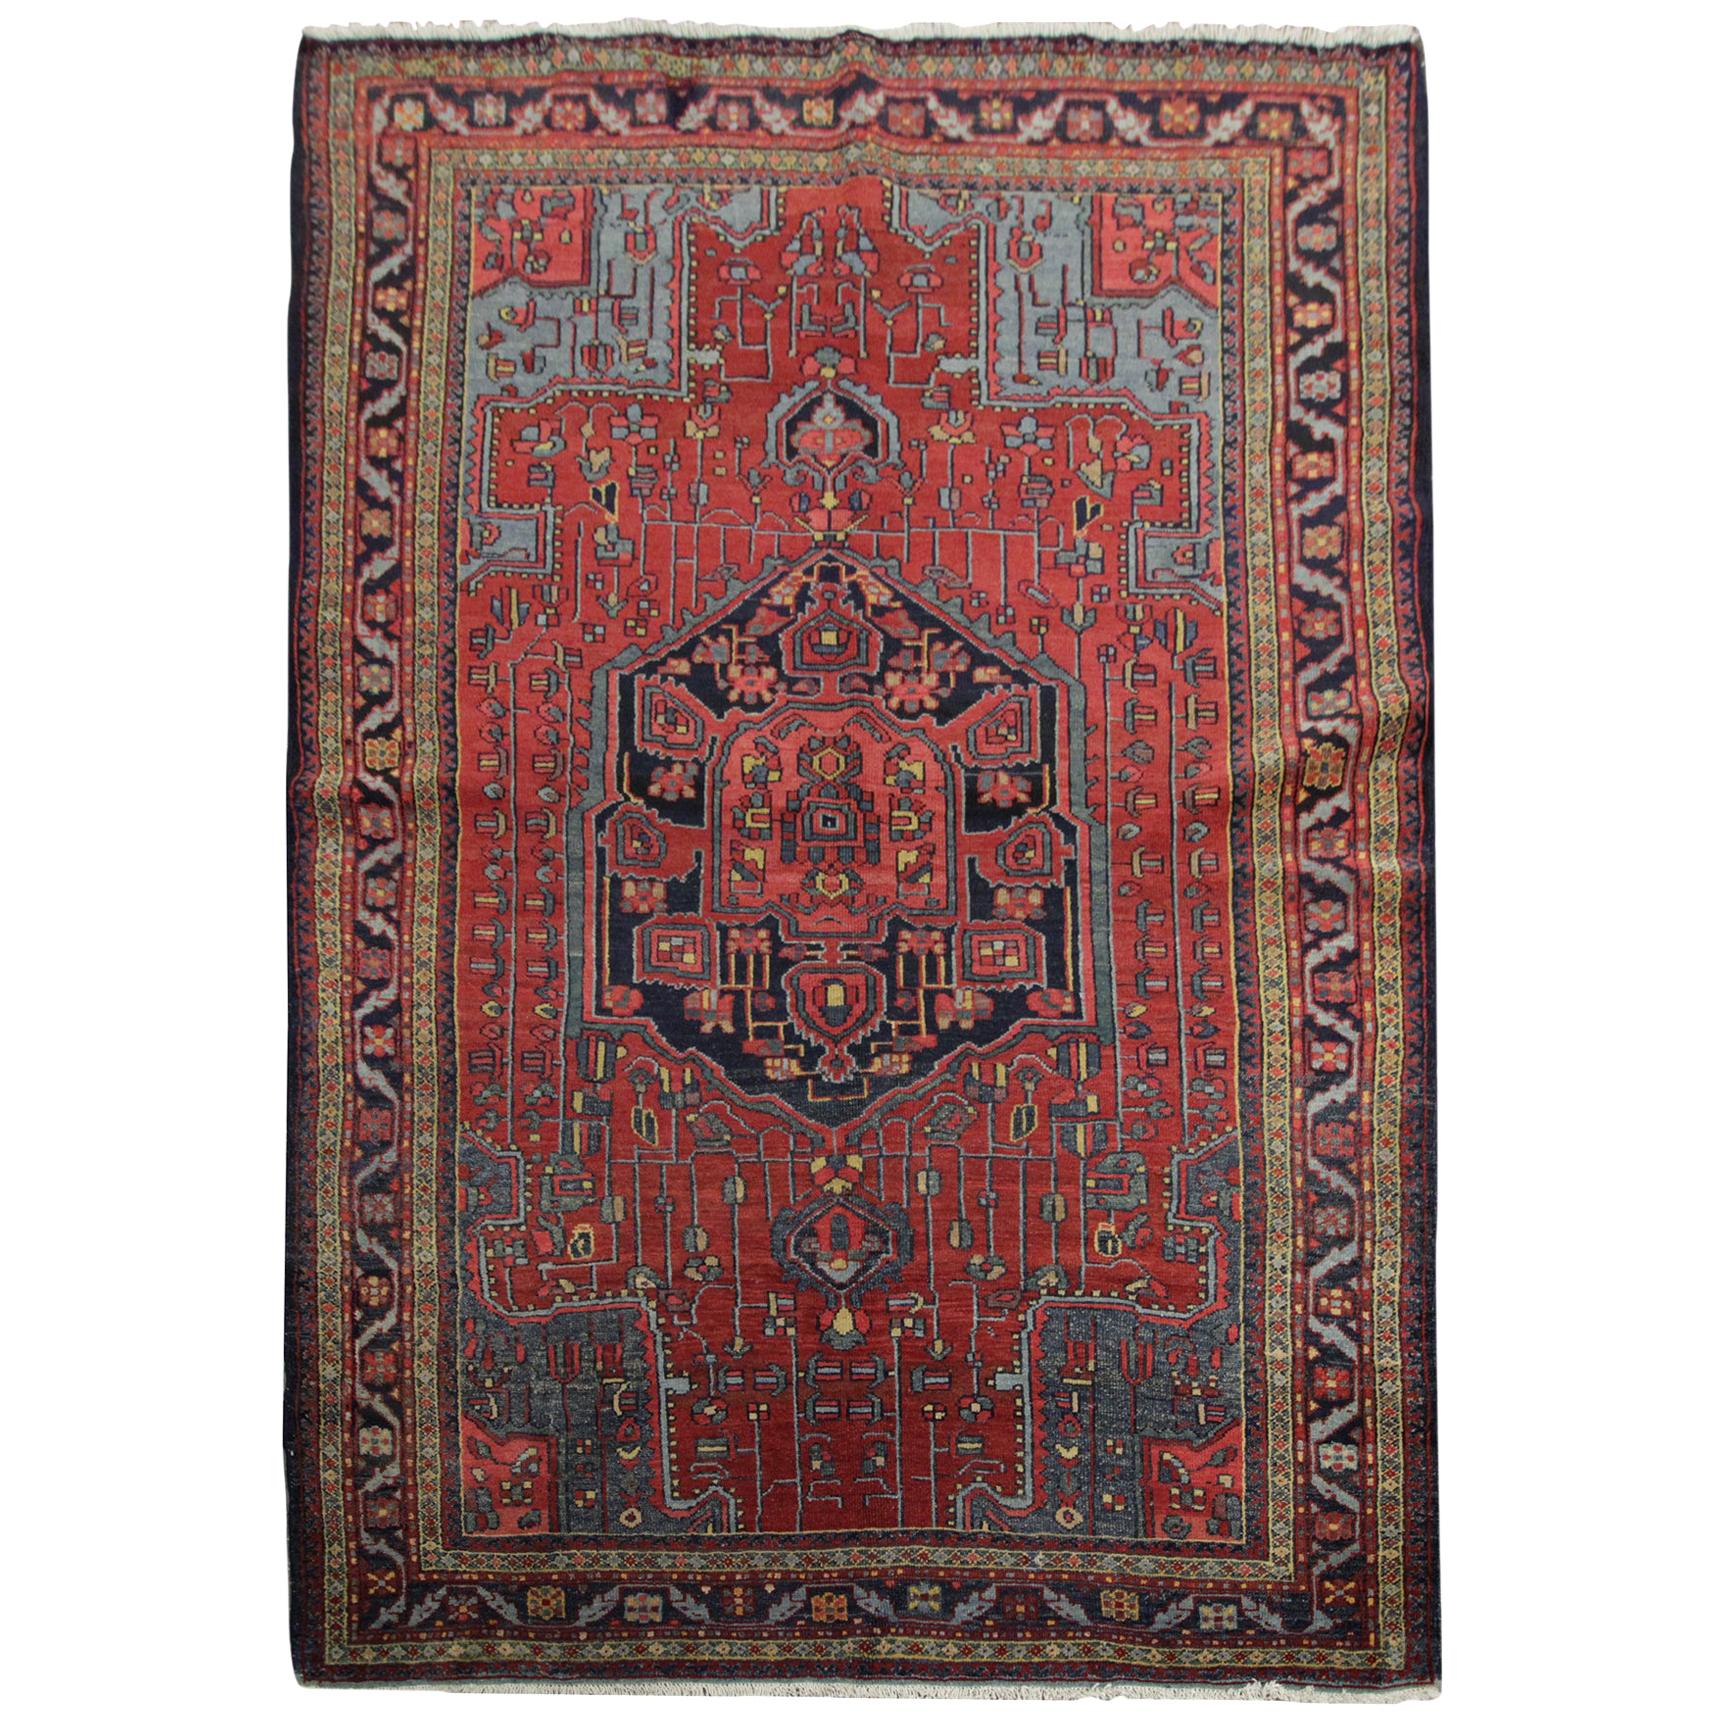 Handgefertigter Teppich Antiker Teppich Kaukasischer Wohnzimmerteppich, Roter Stammesteppich Orientalischer Teppich 